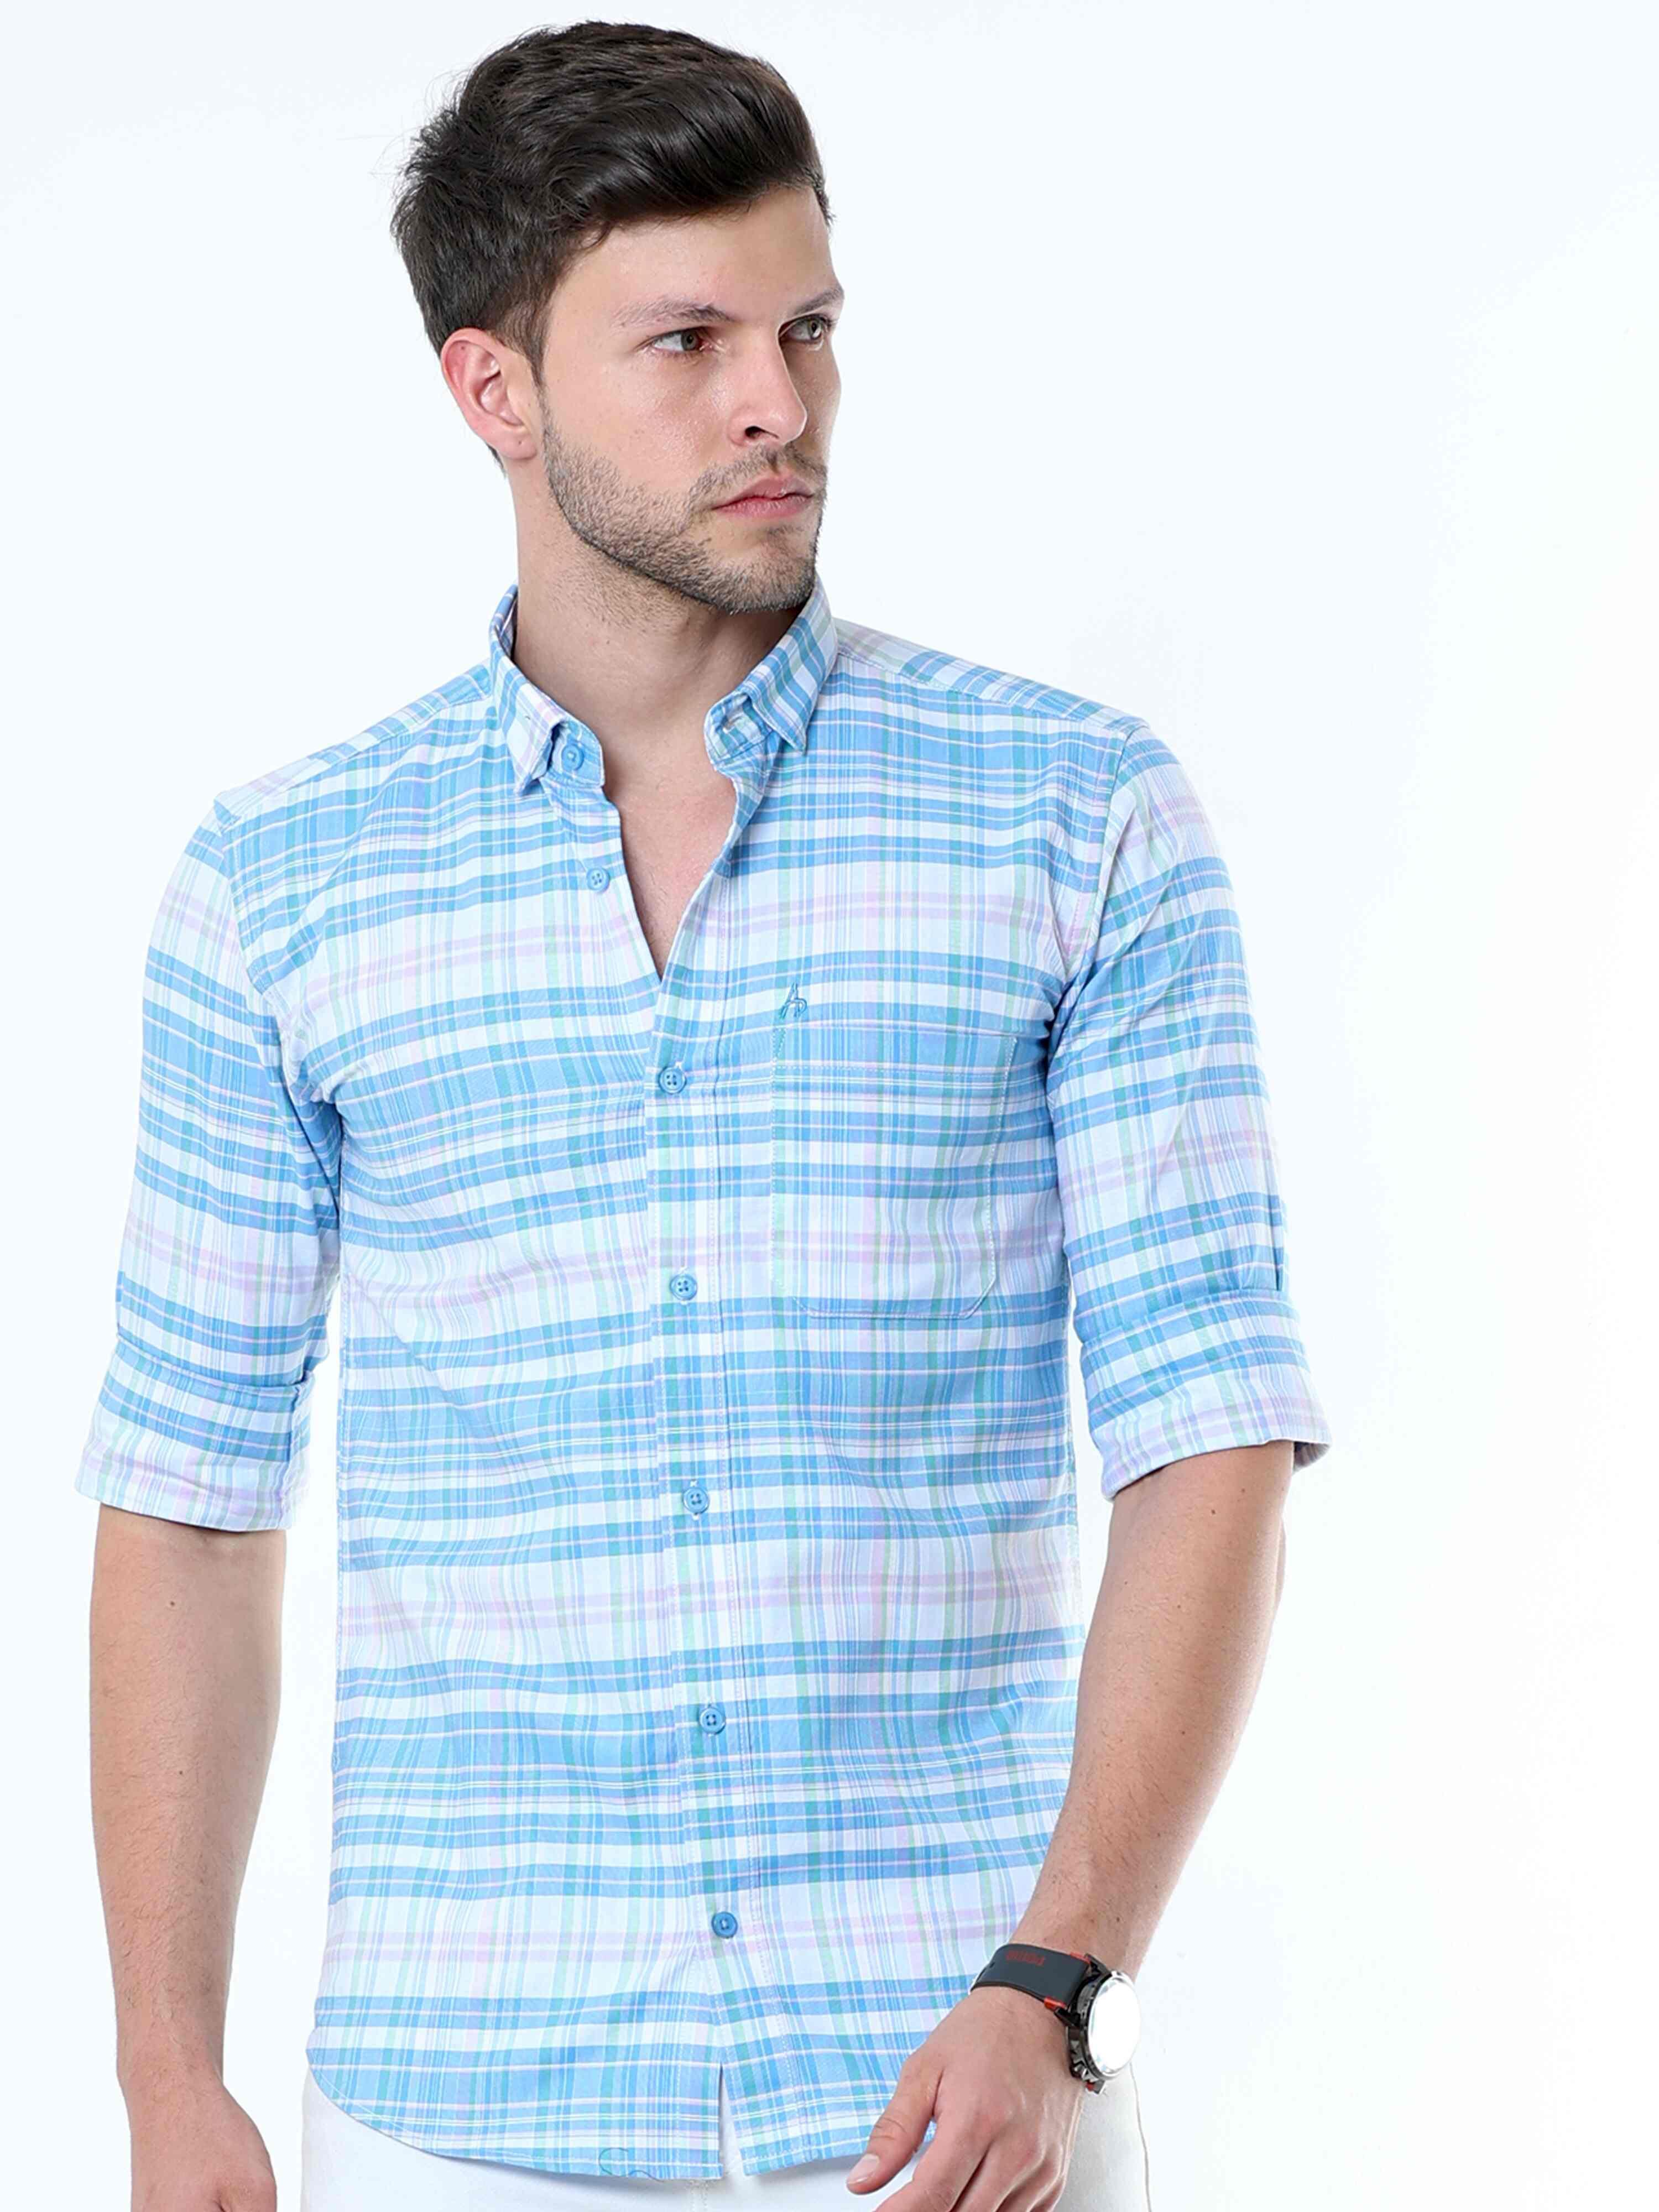 Neon Blue Classy Check Shirt